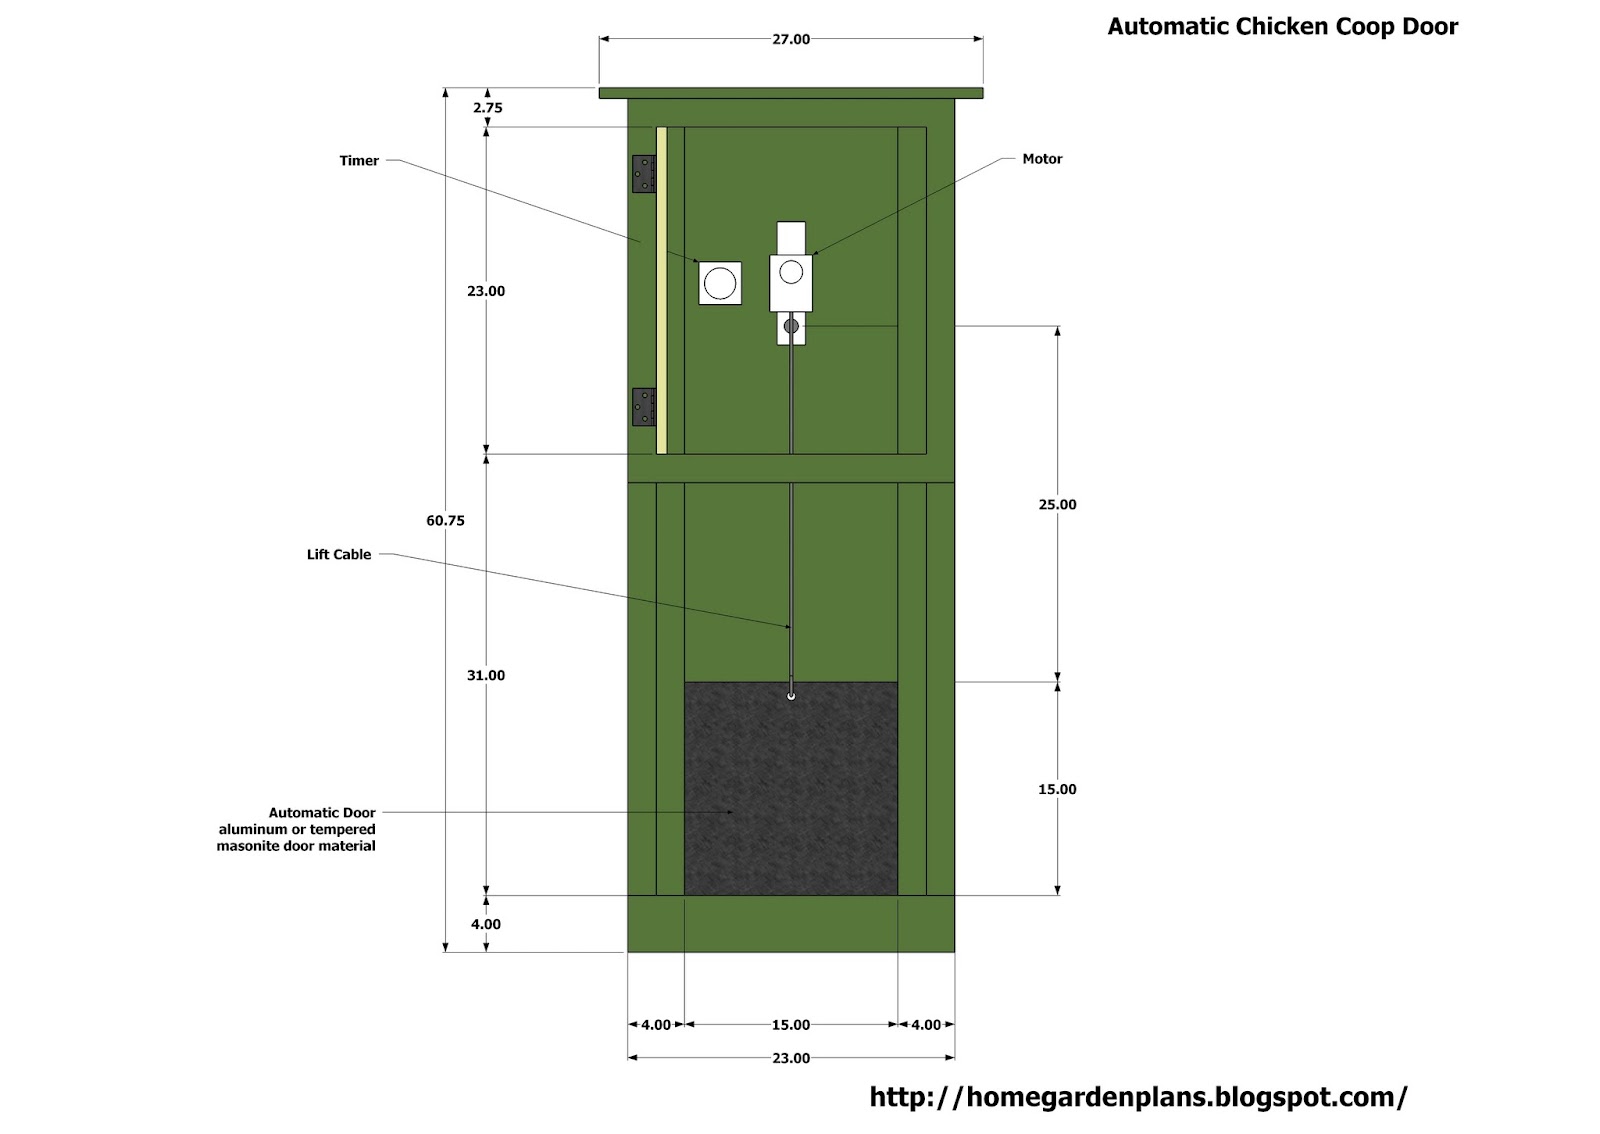 ... garden plans: Automatic Chicken Coop Door - Free Chicken Coop Plans